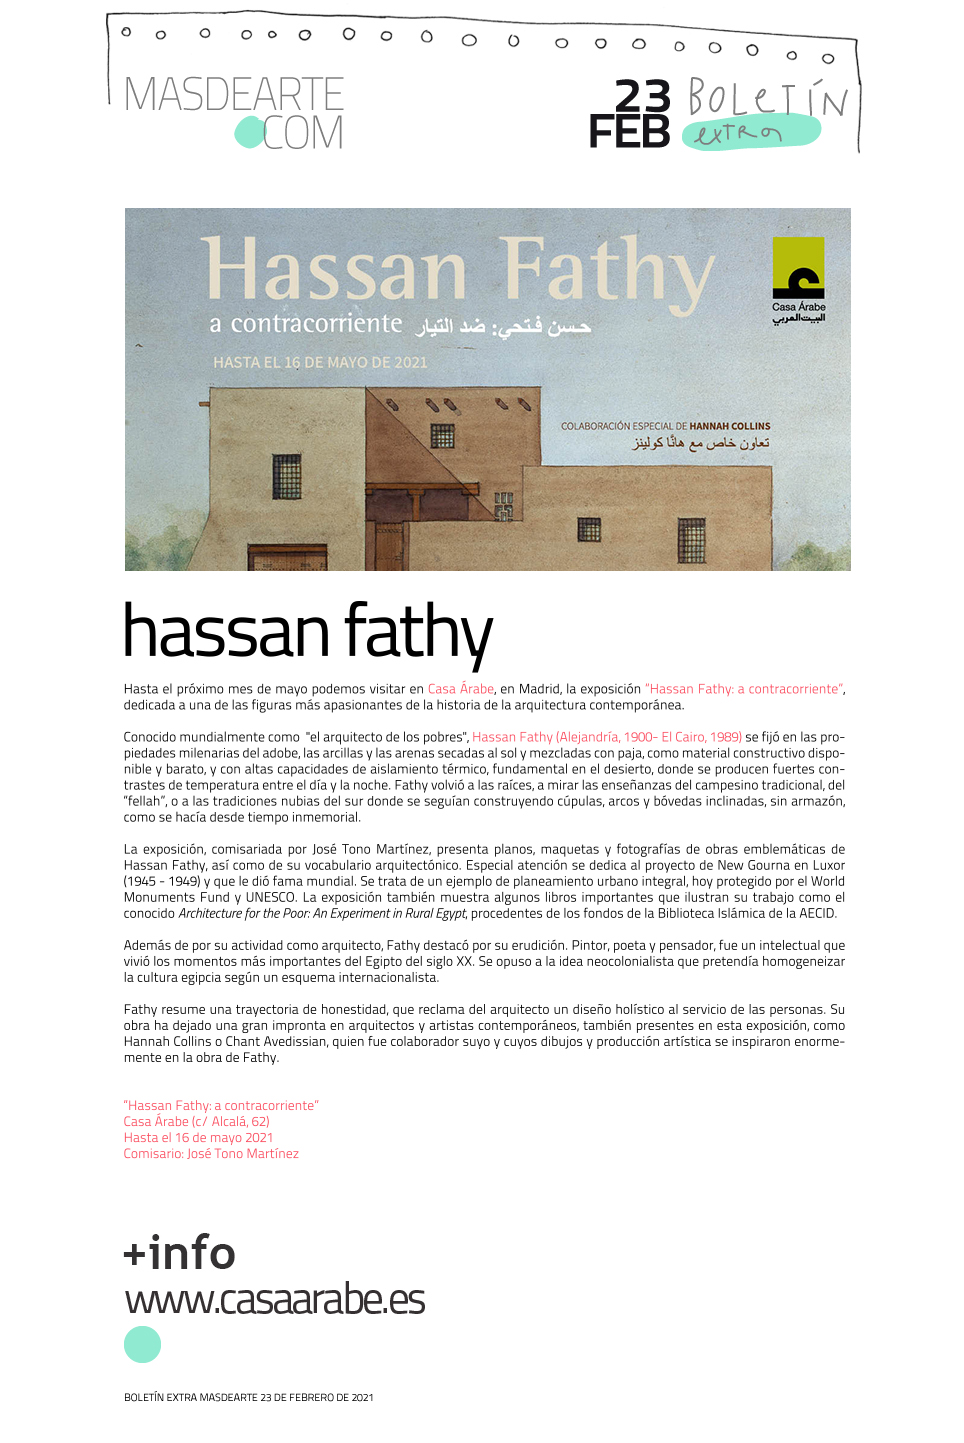 Extra masdearte: descubre la obra del arquitecto Hassan Fathy en Casa Árabe